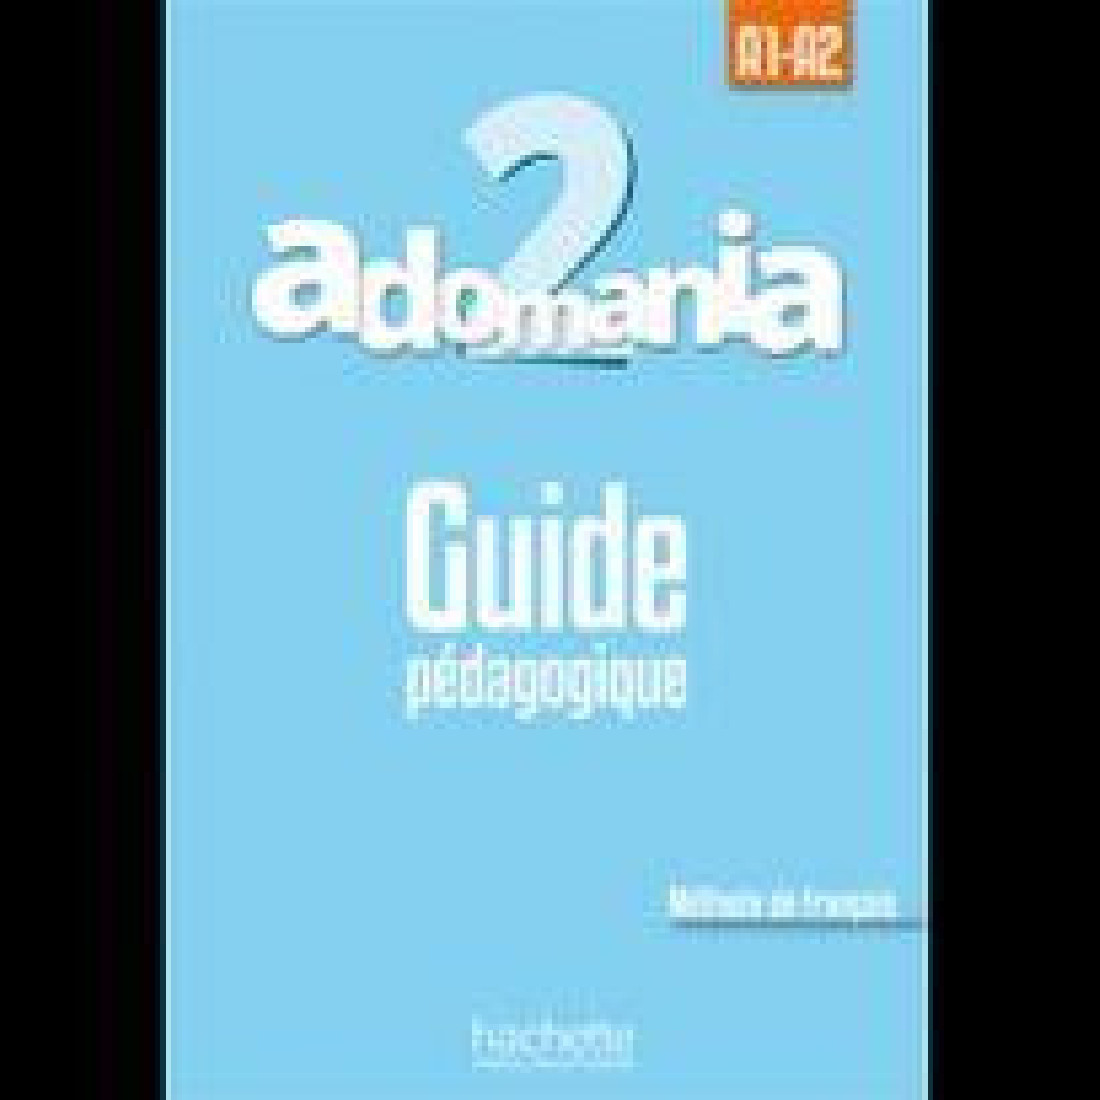 ADOMANIA 2 A1 + A2 GUIDE PEDAGOGIQUE